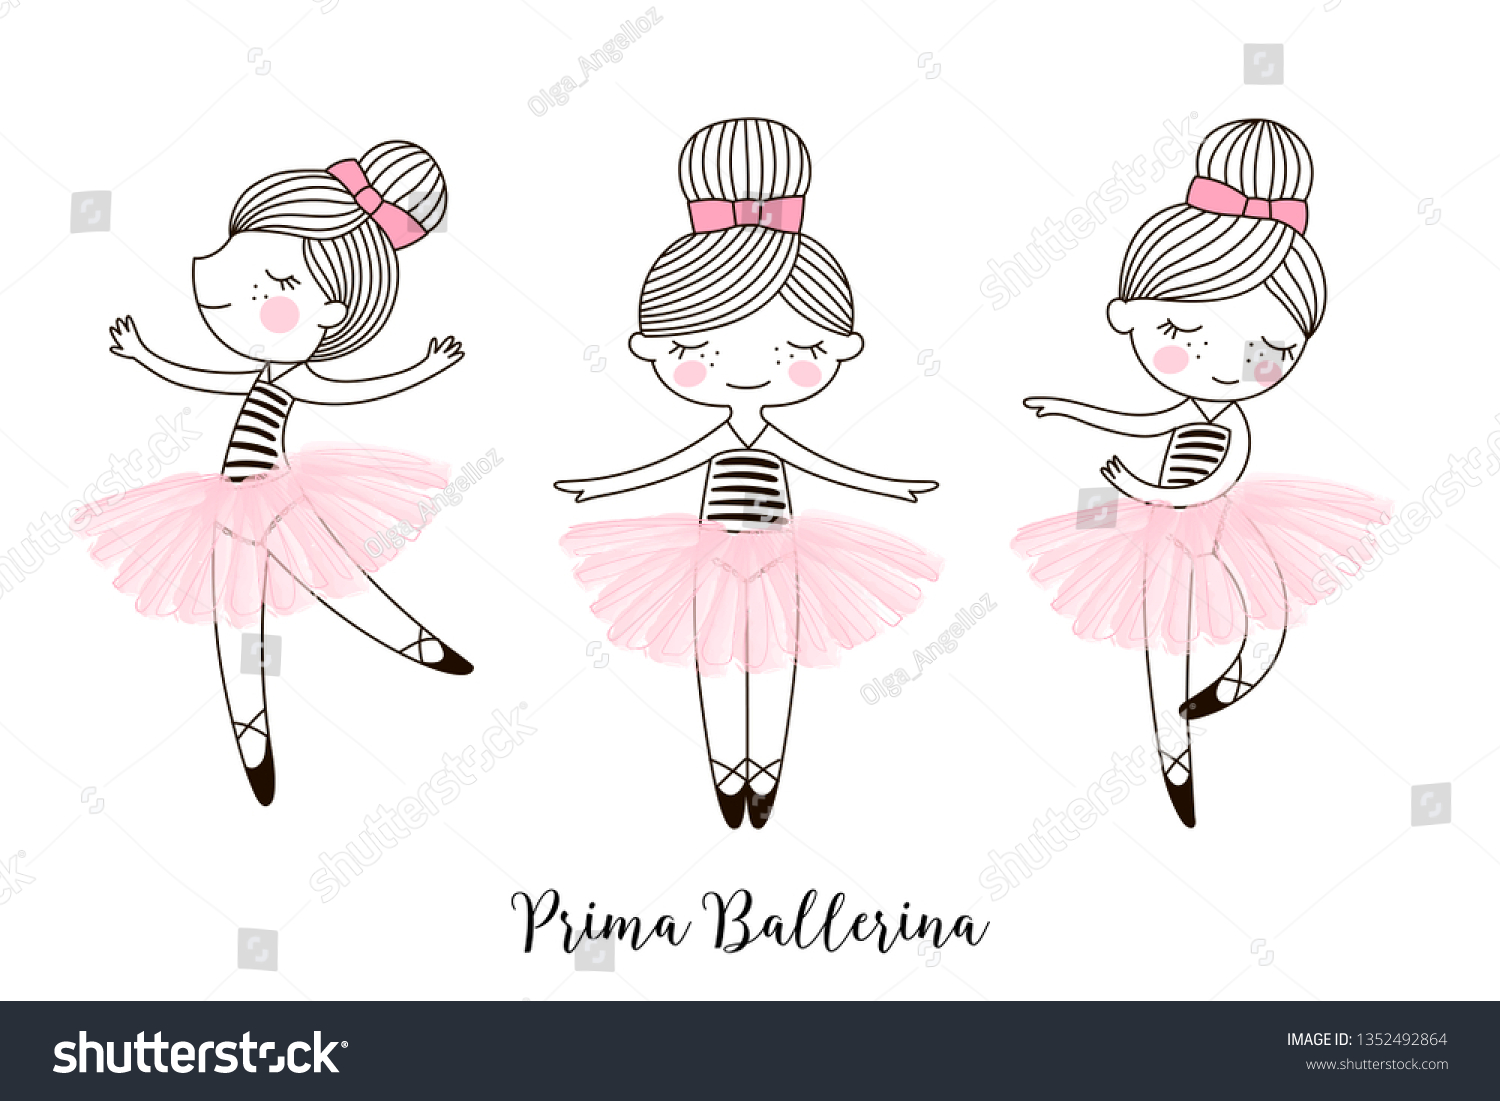 ピンクの透明バレエのスカートに小さくてかわいい踊る漫画のバレリーナ人形のキャラクターセット 白い背景に単純な線形ベクター画像イラスト 女の子っぽいデザイン Tシャツに最適 のベクター画像素材 ロイヤリティフリー